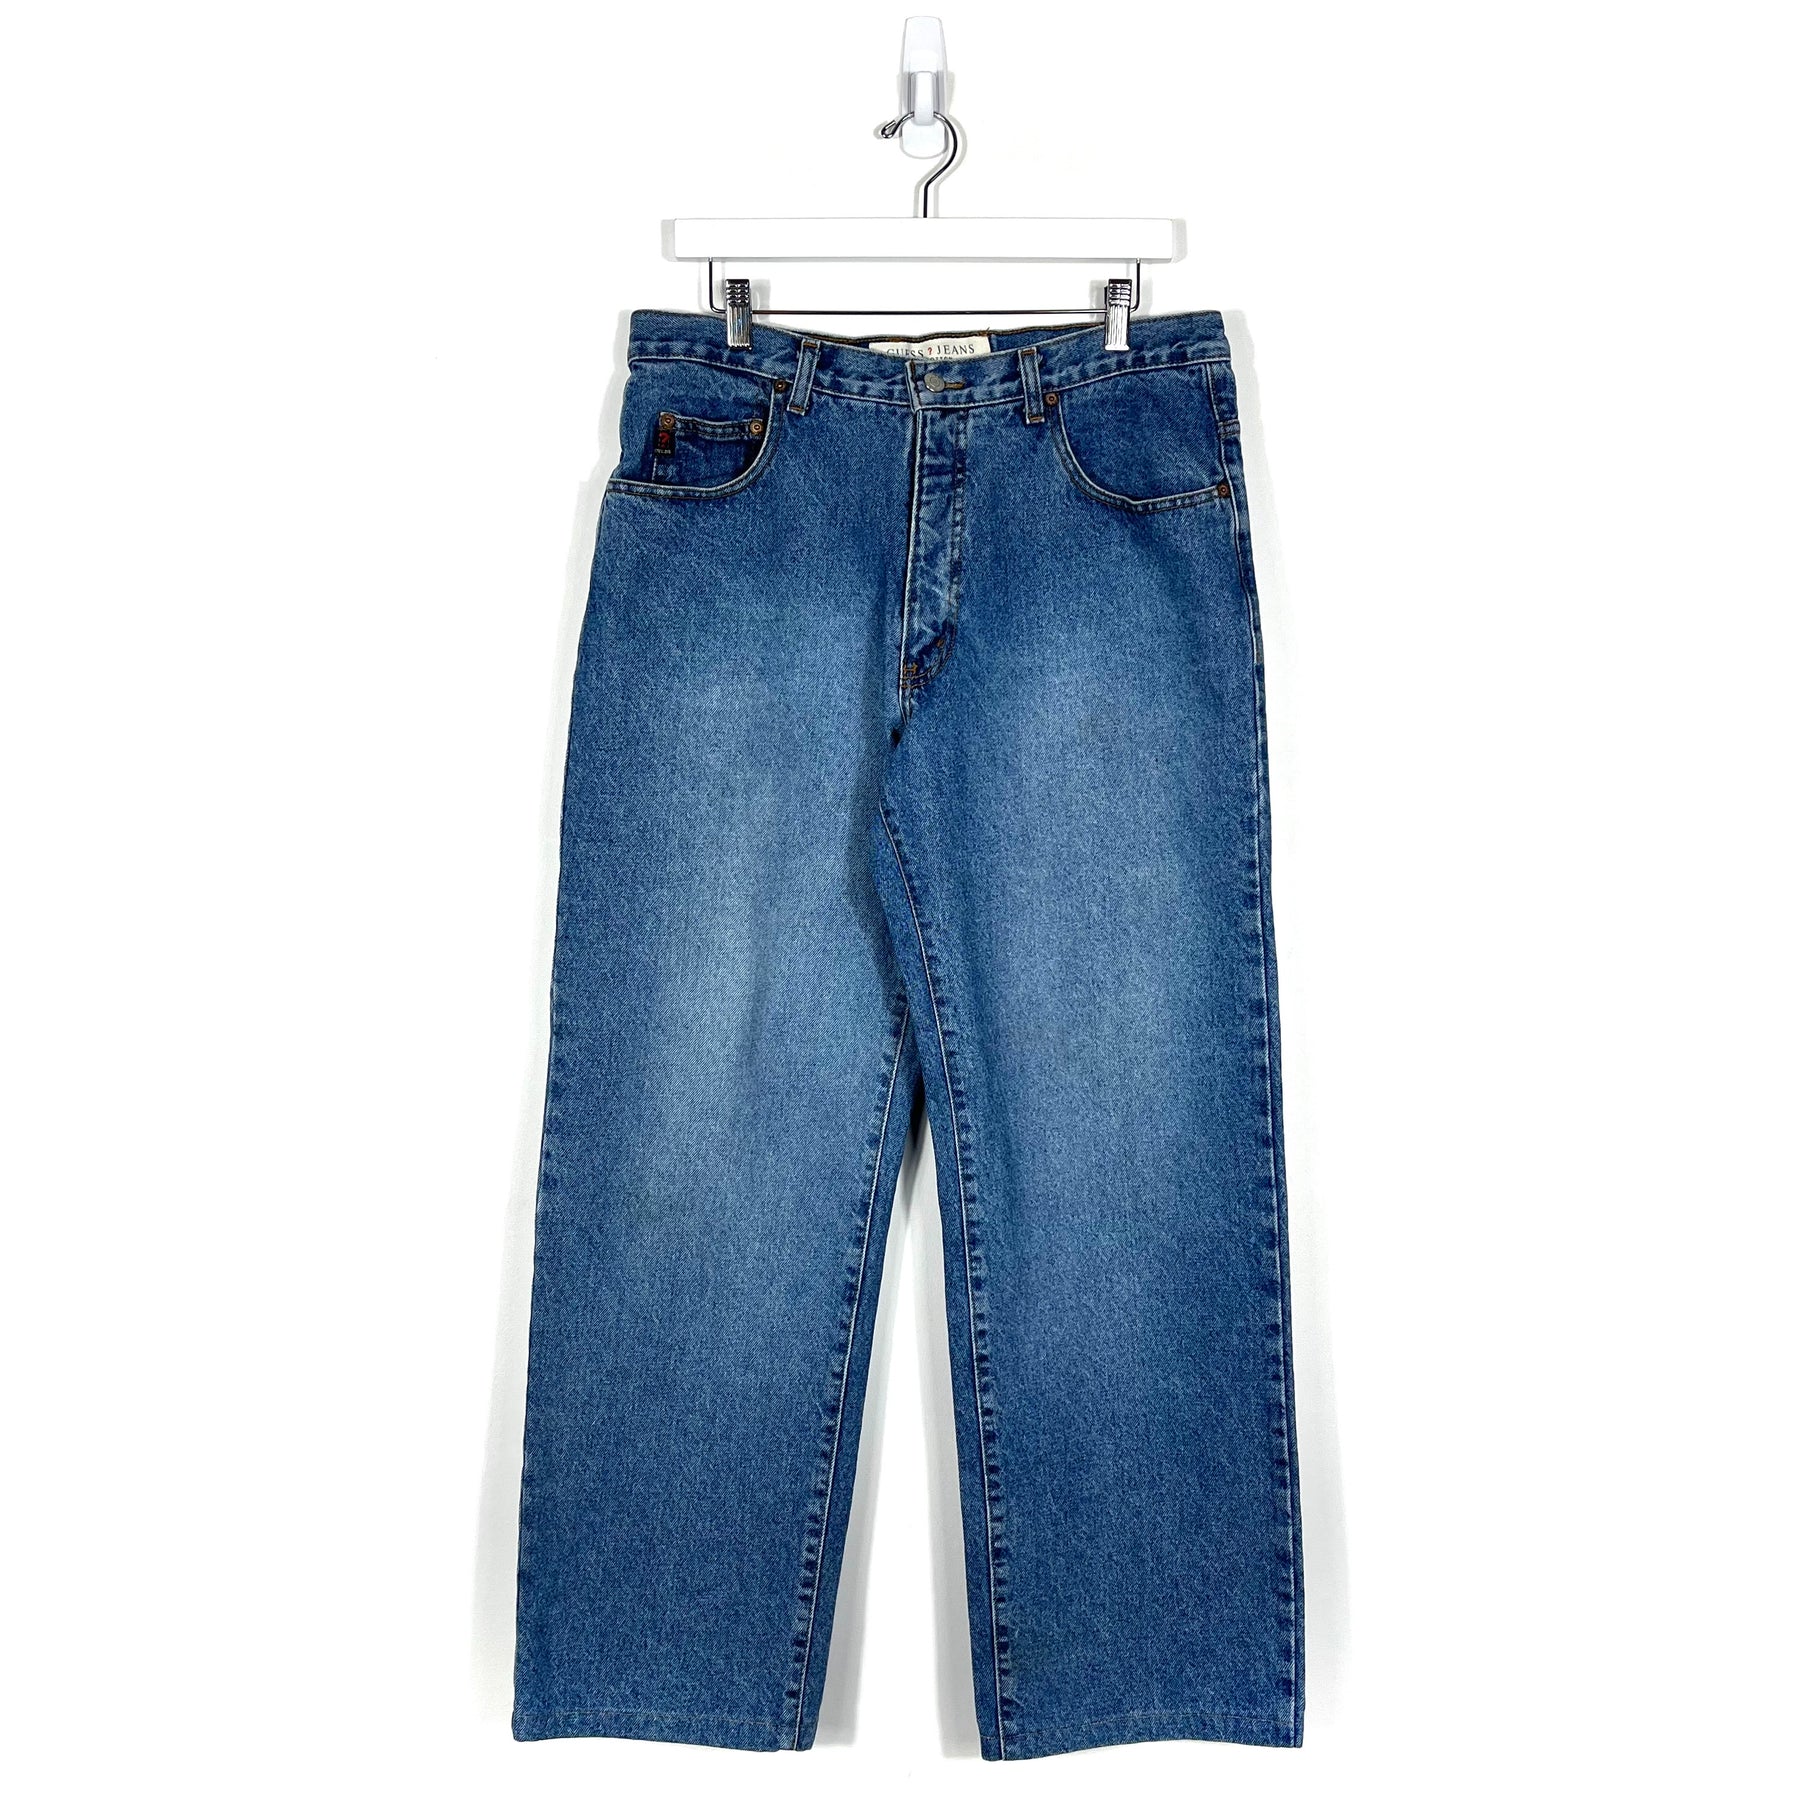 Vintage Guess Jeans - Men's 32/30